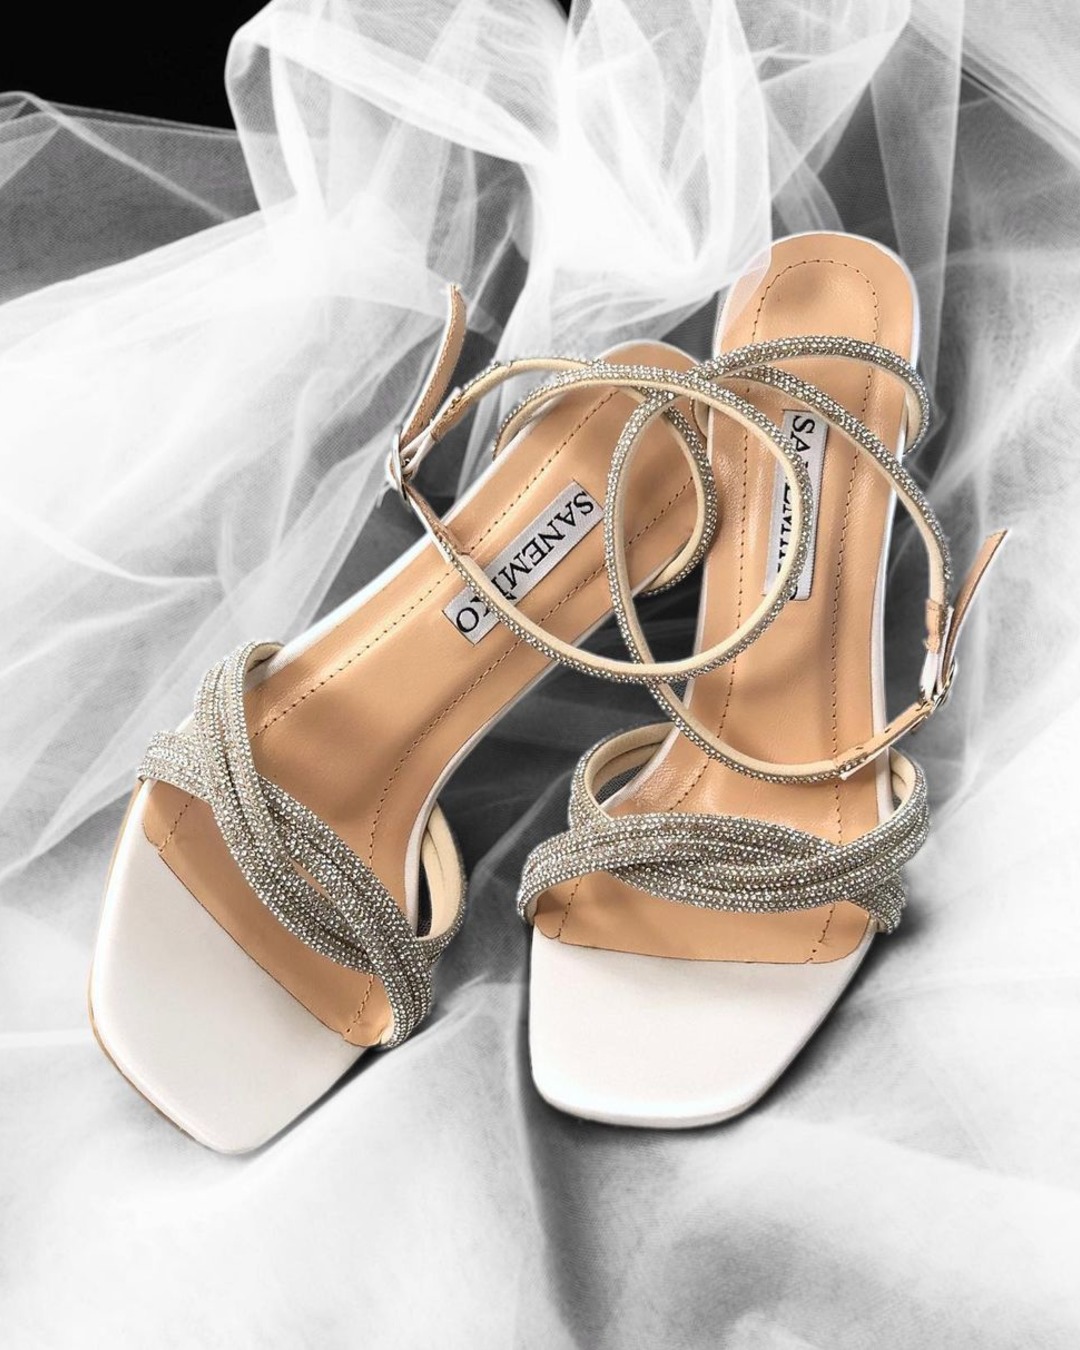 white wedding sandals sparkly